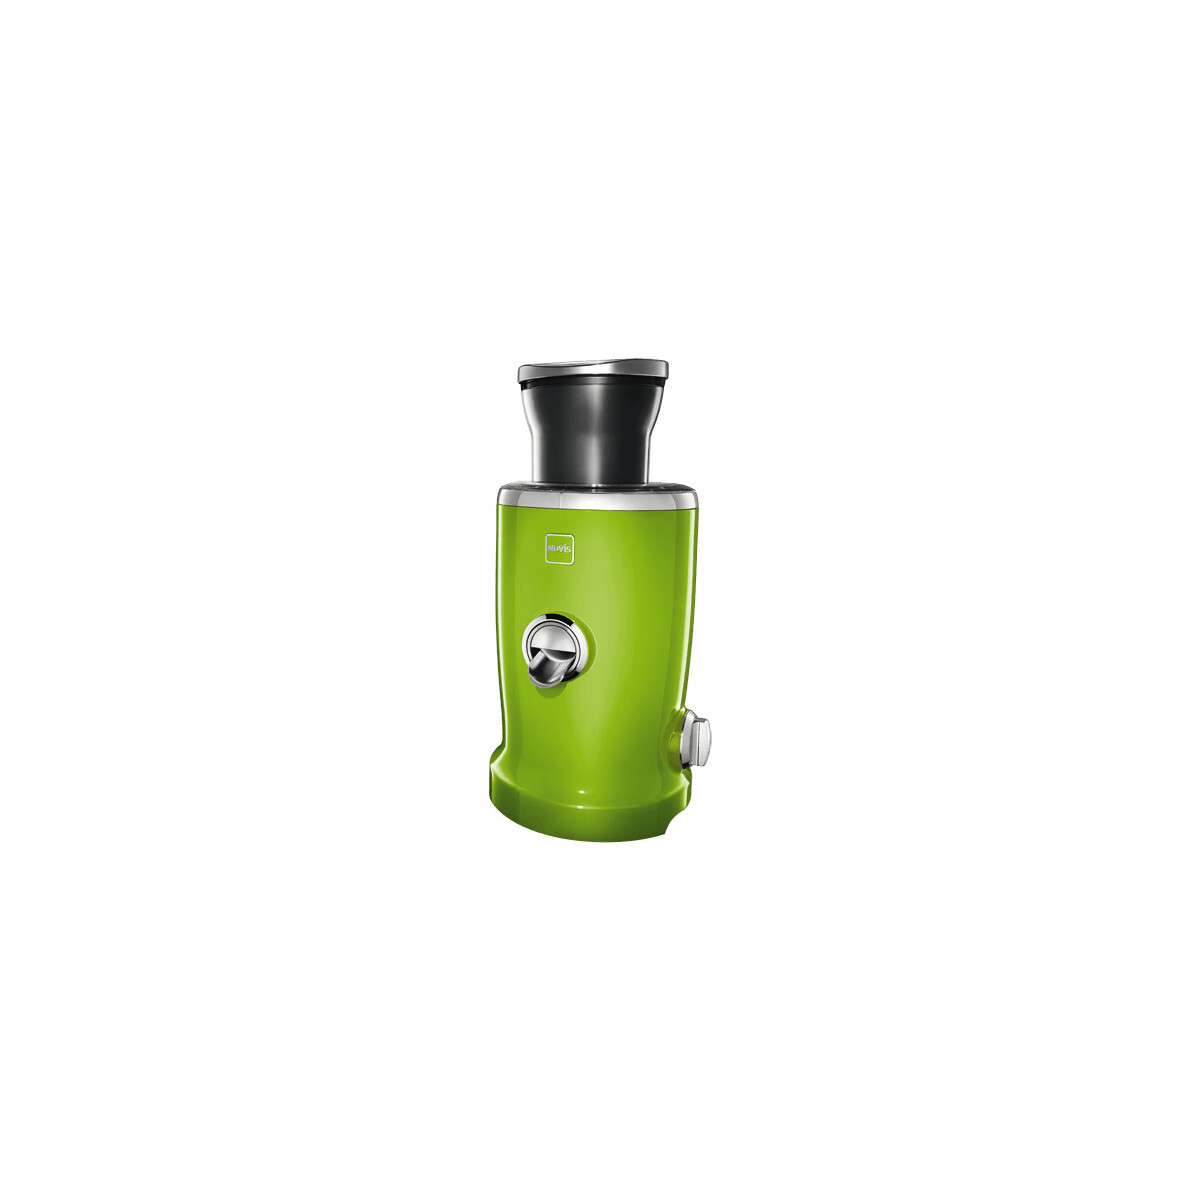 Novis 6511.06.20 Vita Juicer grün